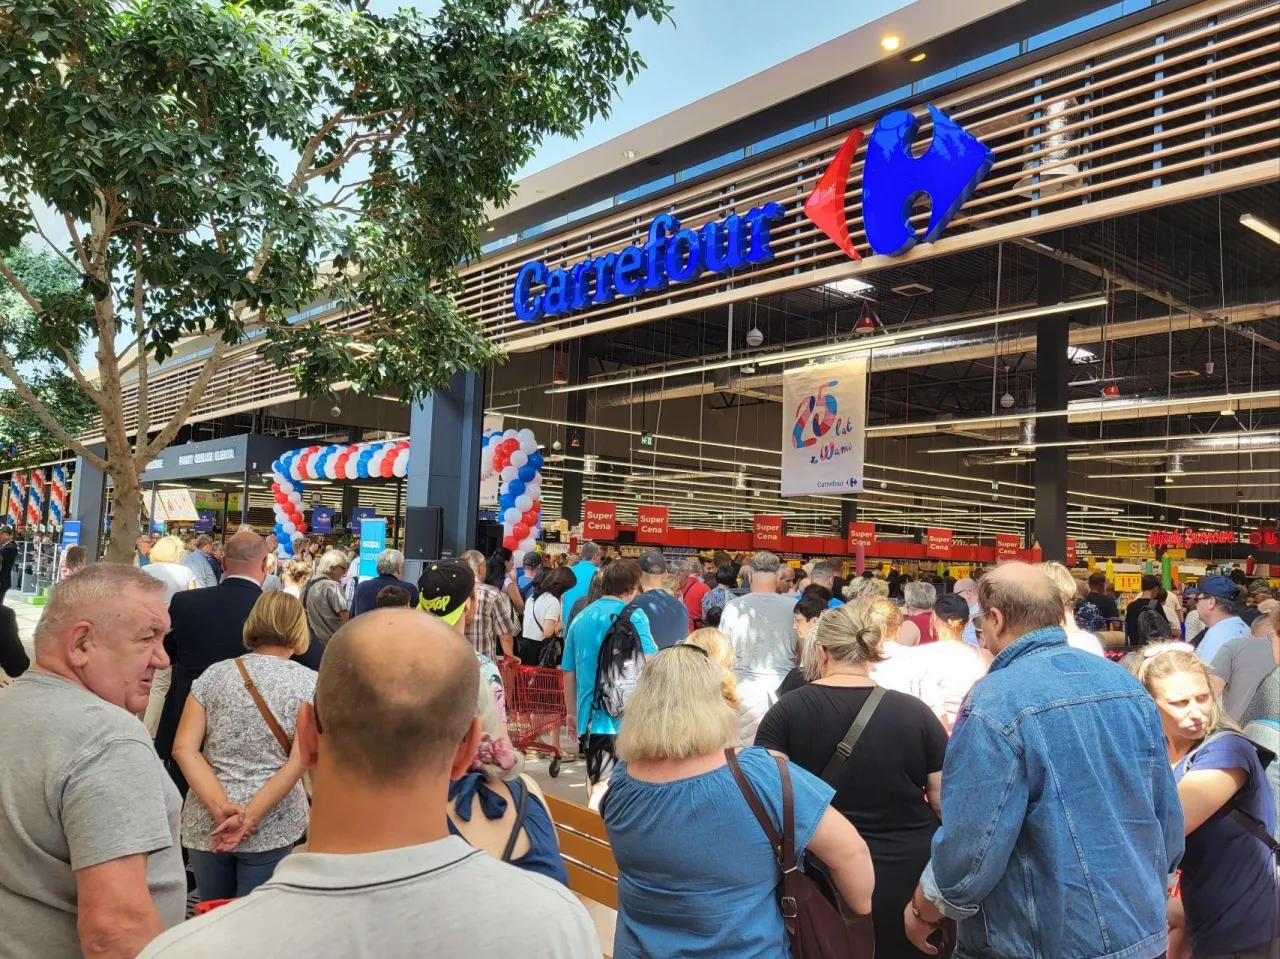 24 sierpnia z okazji otwarcia hipermarketu Carrefour w Częstochowie klienci mogli kupić olej Kujawski w cenie 6 zł z kawałkiem. Co tam się działo (Carrefour Polska)